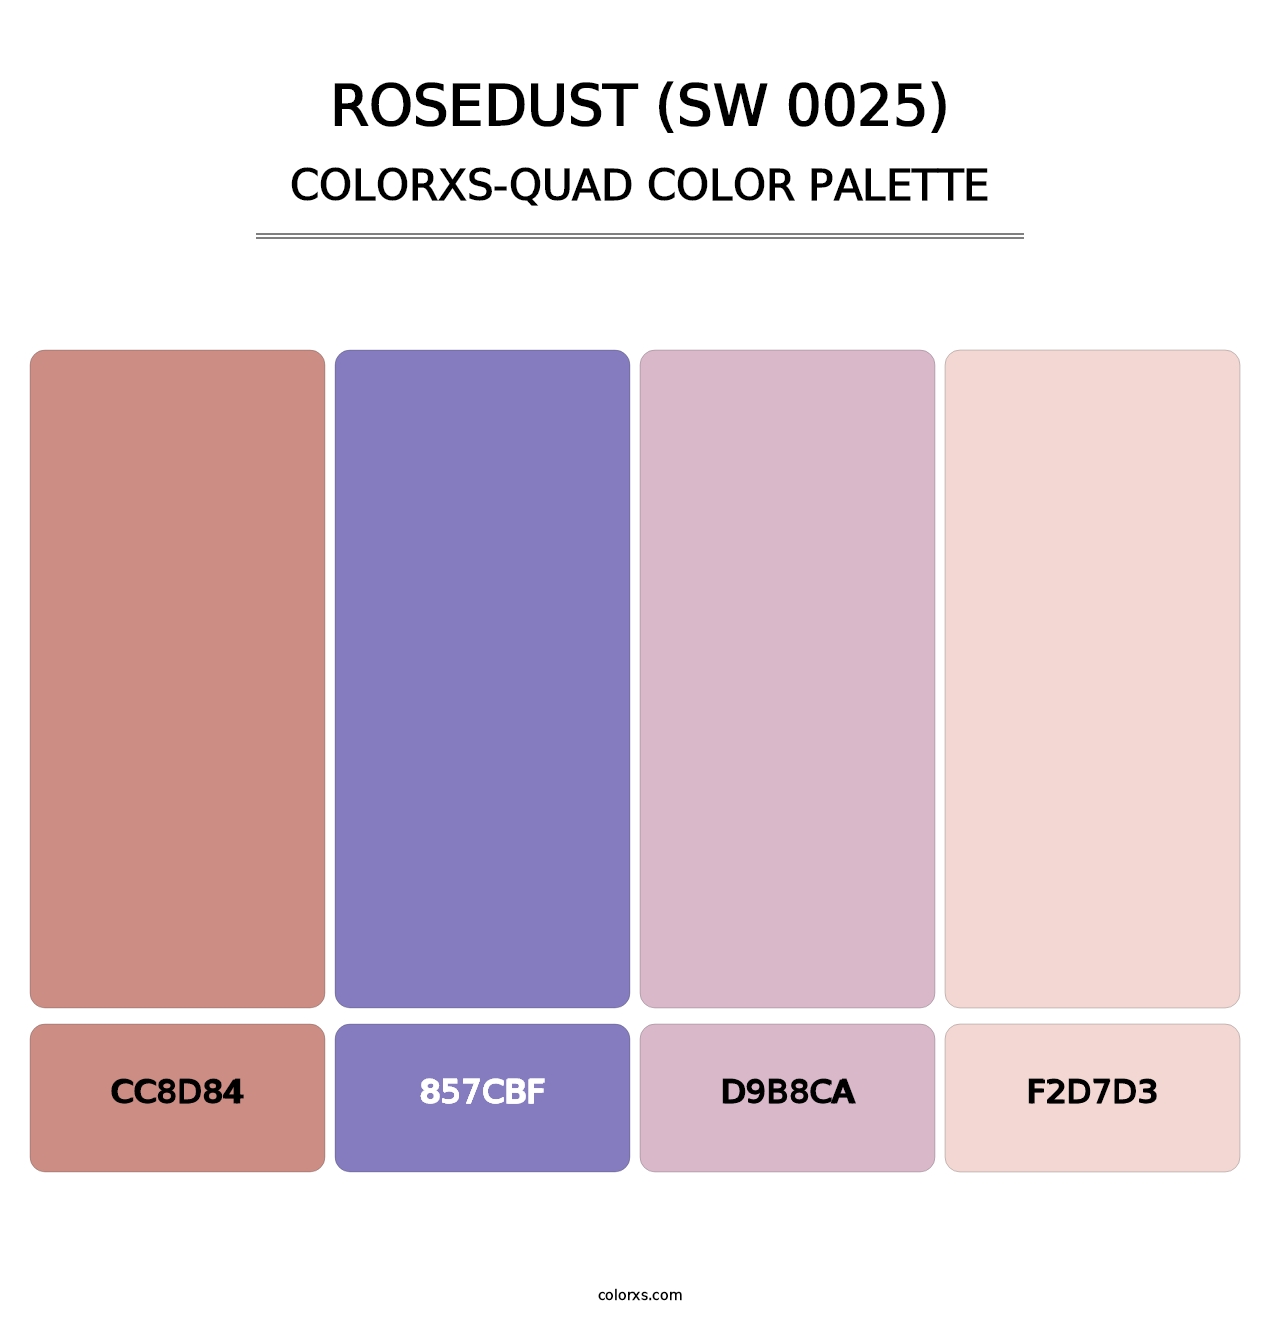 Rosedust (SW 0025) - Colorxs Quad Palette